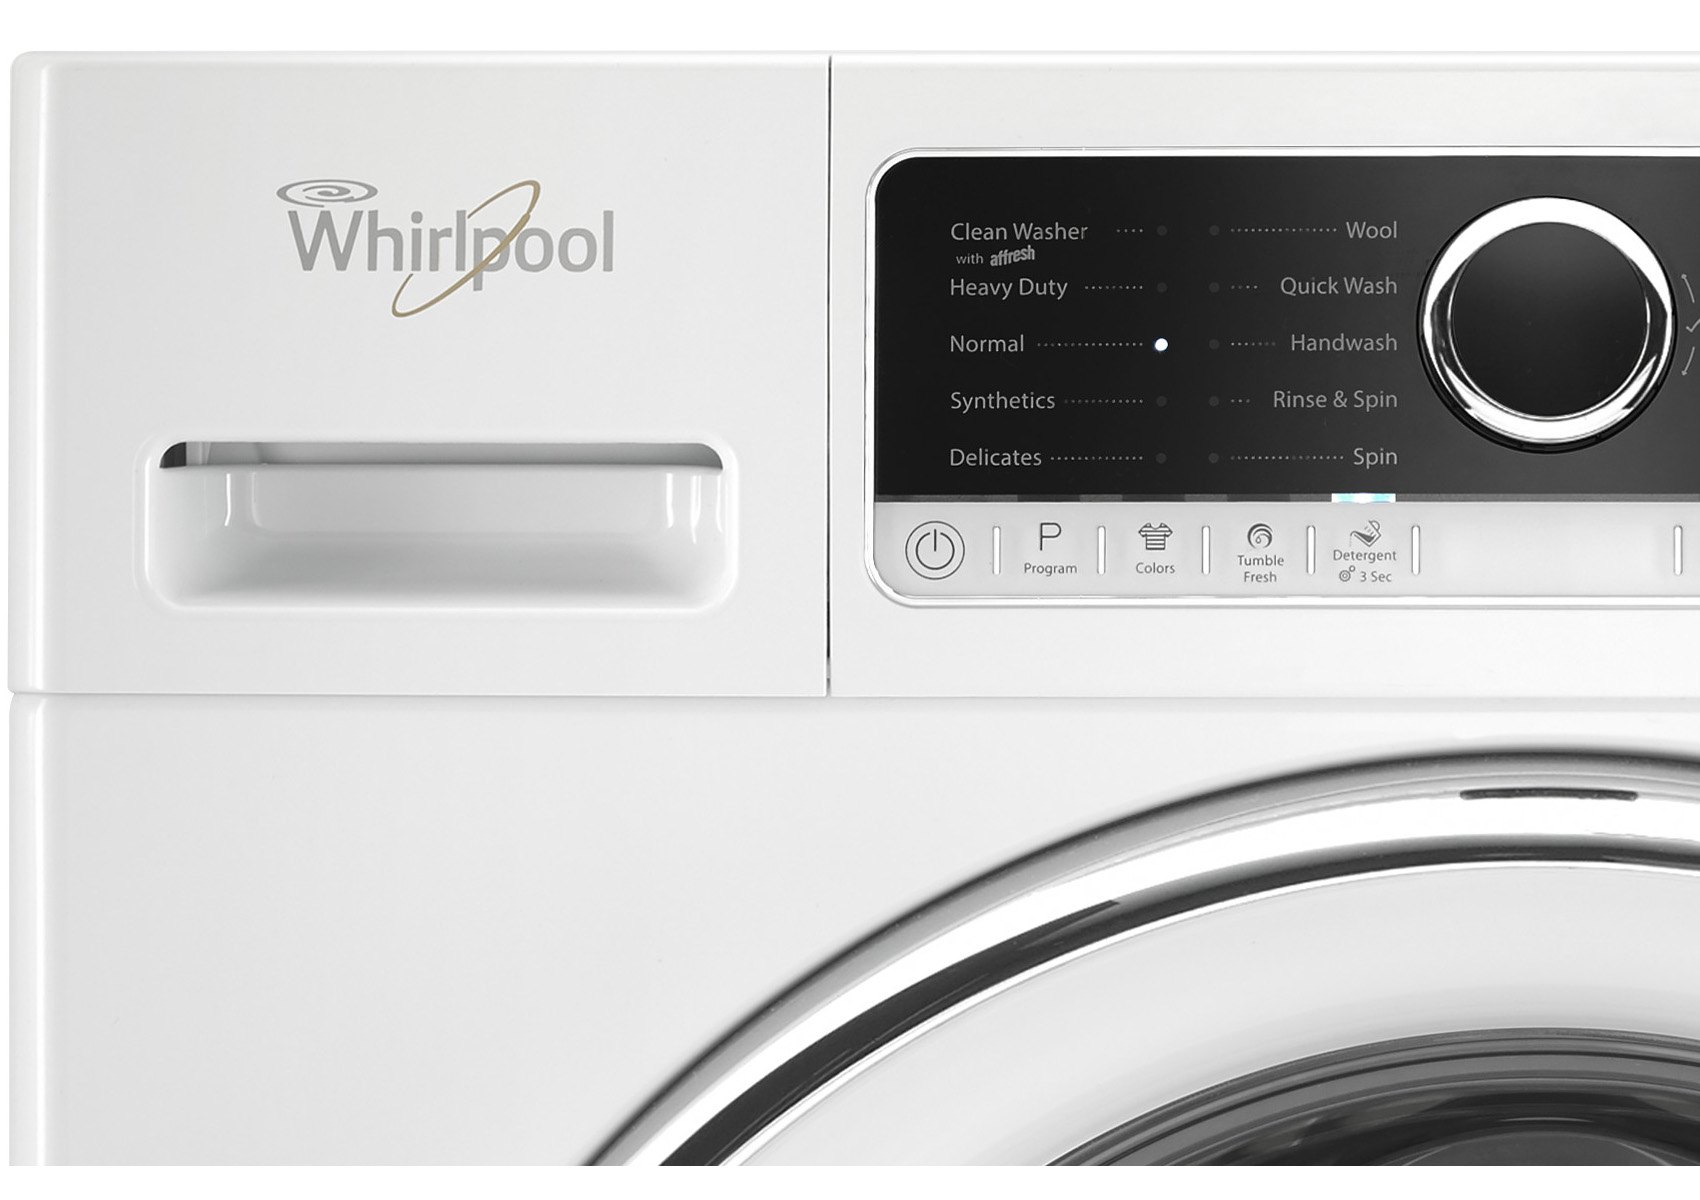 how to reset the whirlpool washing machine